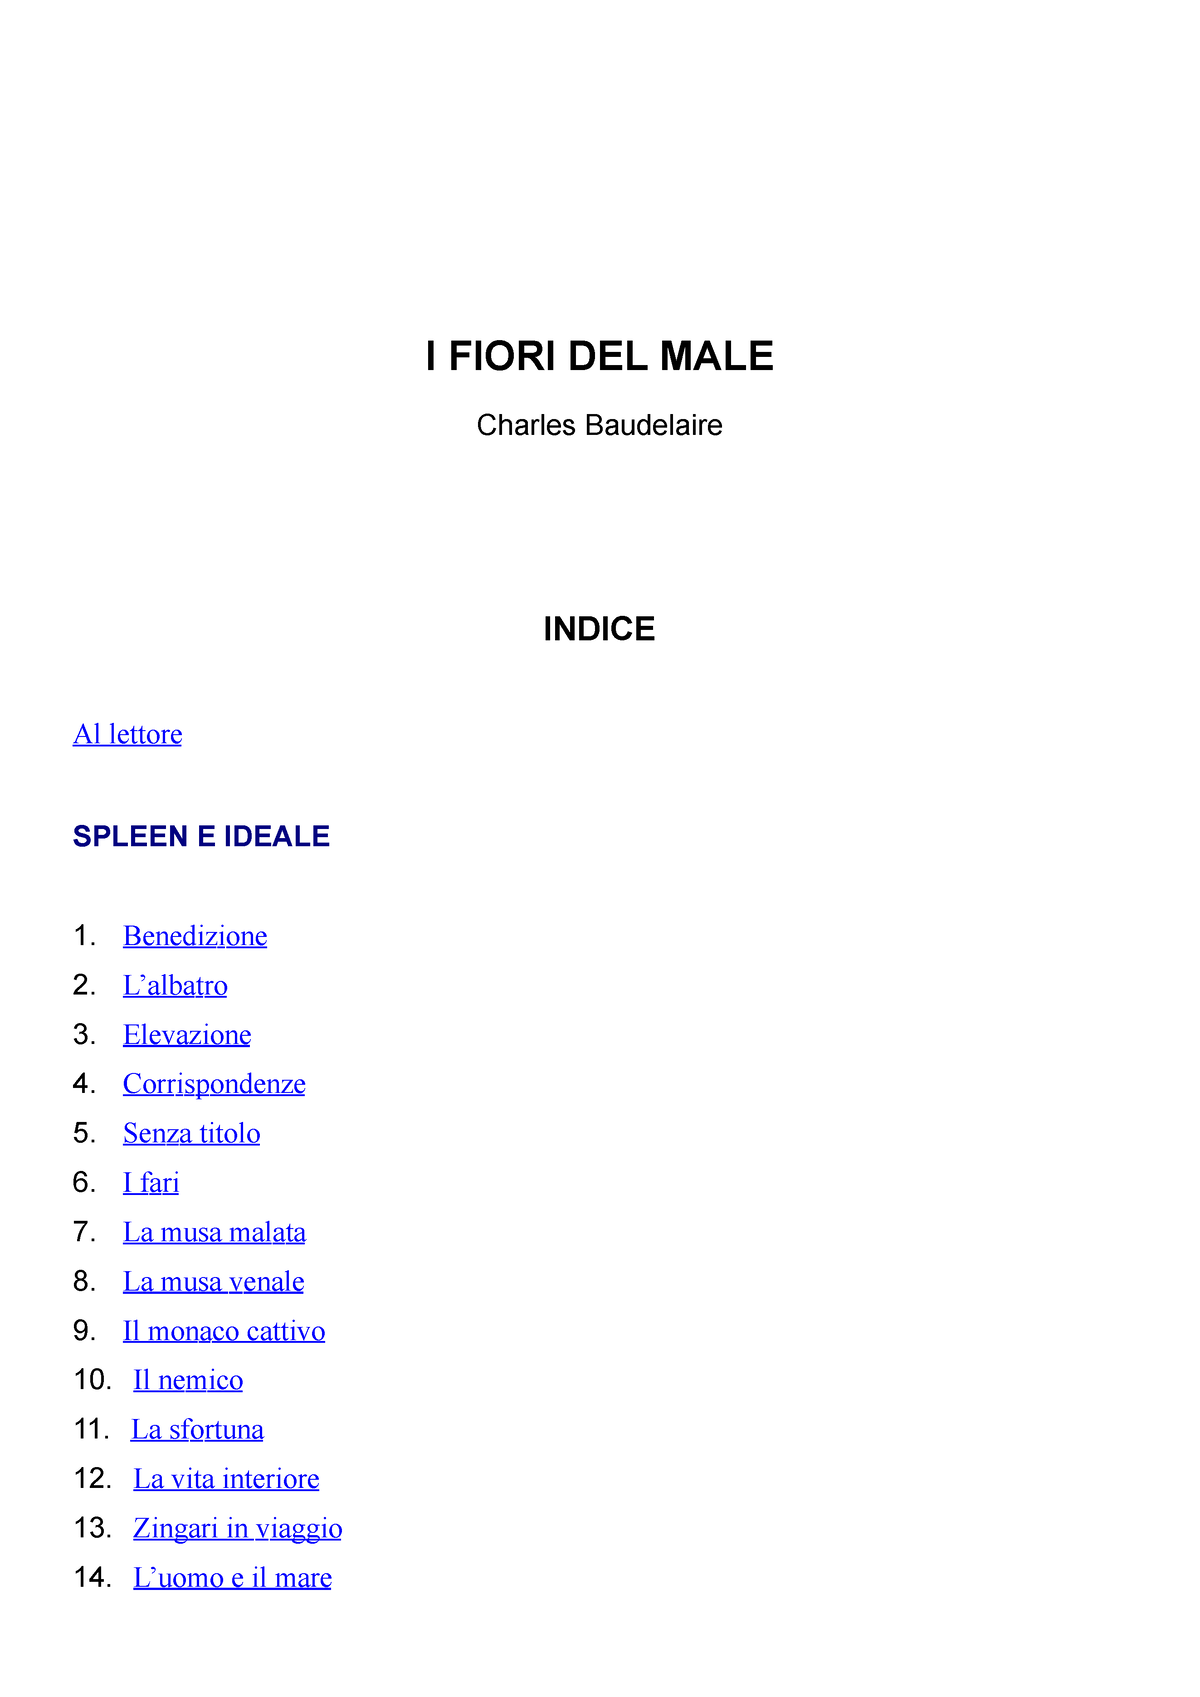 I fiori del male - Charles Baudelaire - PDF - I FIORI DEL MALE Charles  Baudelaire INDICE Al lettore - Studocu